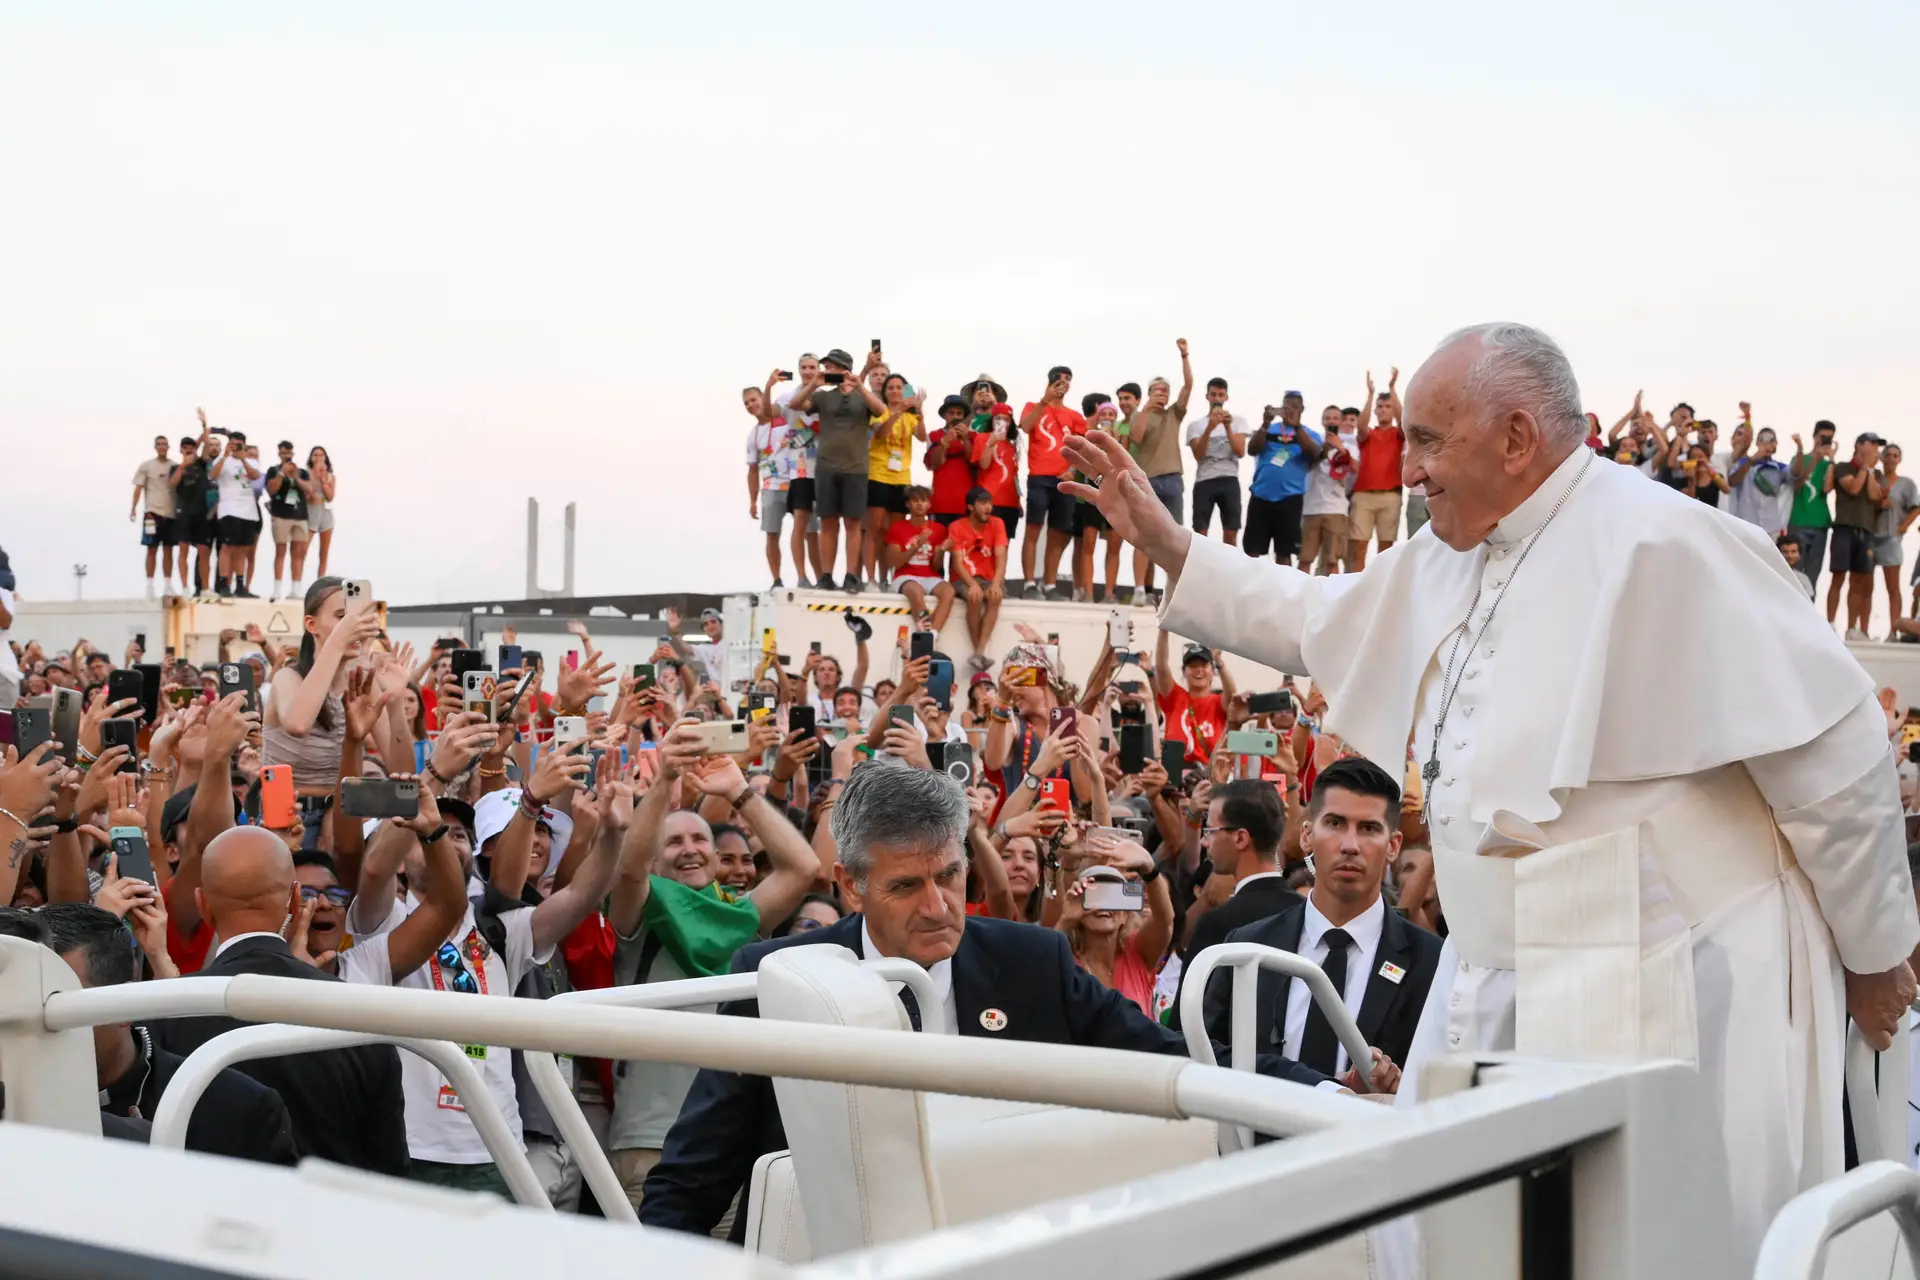 Lisbonne « la ville des rêves » restera dans la mémoire des jeunes pèlerins – Pape